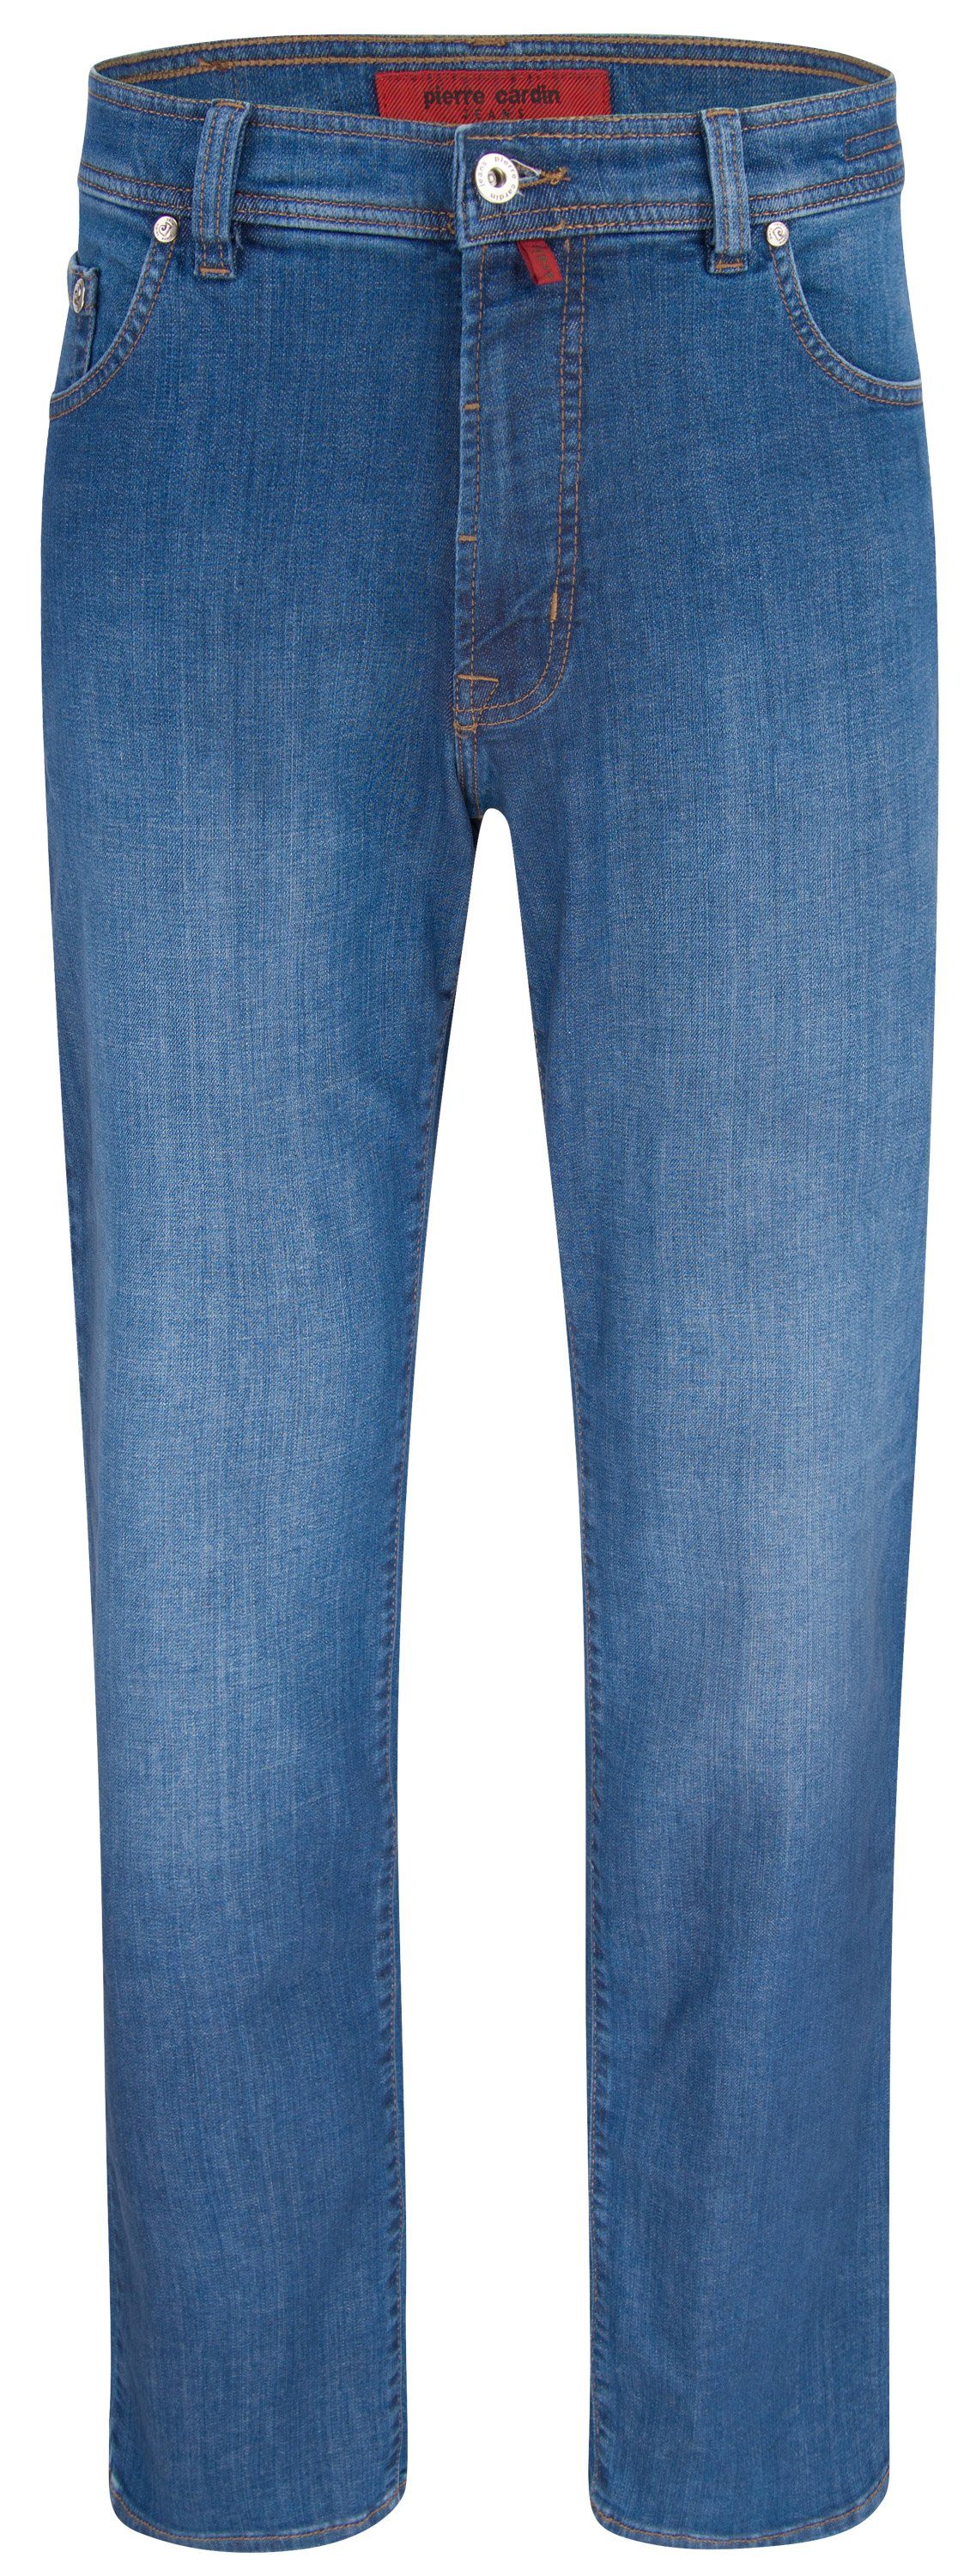 Pierre Cardin 5-Pocket-Jeans PIERRE CARDIN DIJON sky blue used 3231 7200.02 -